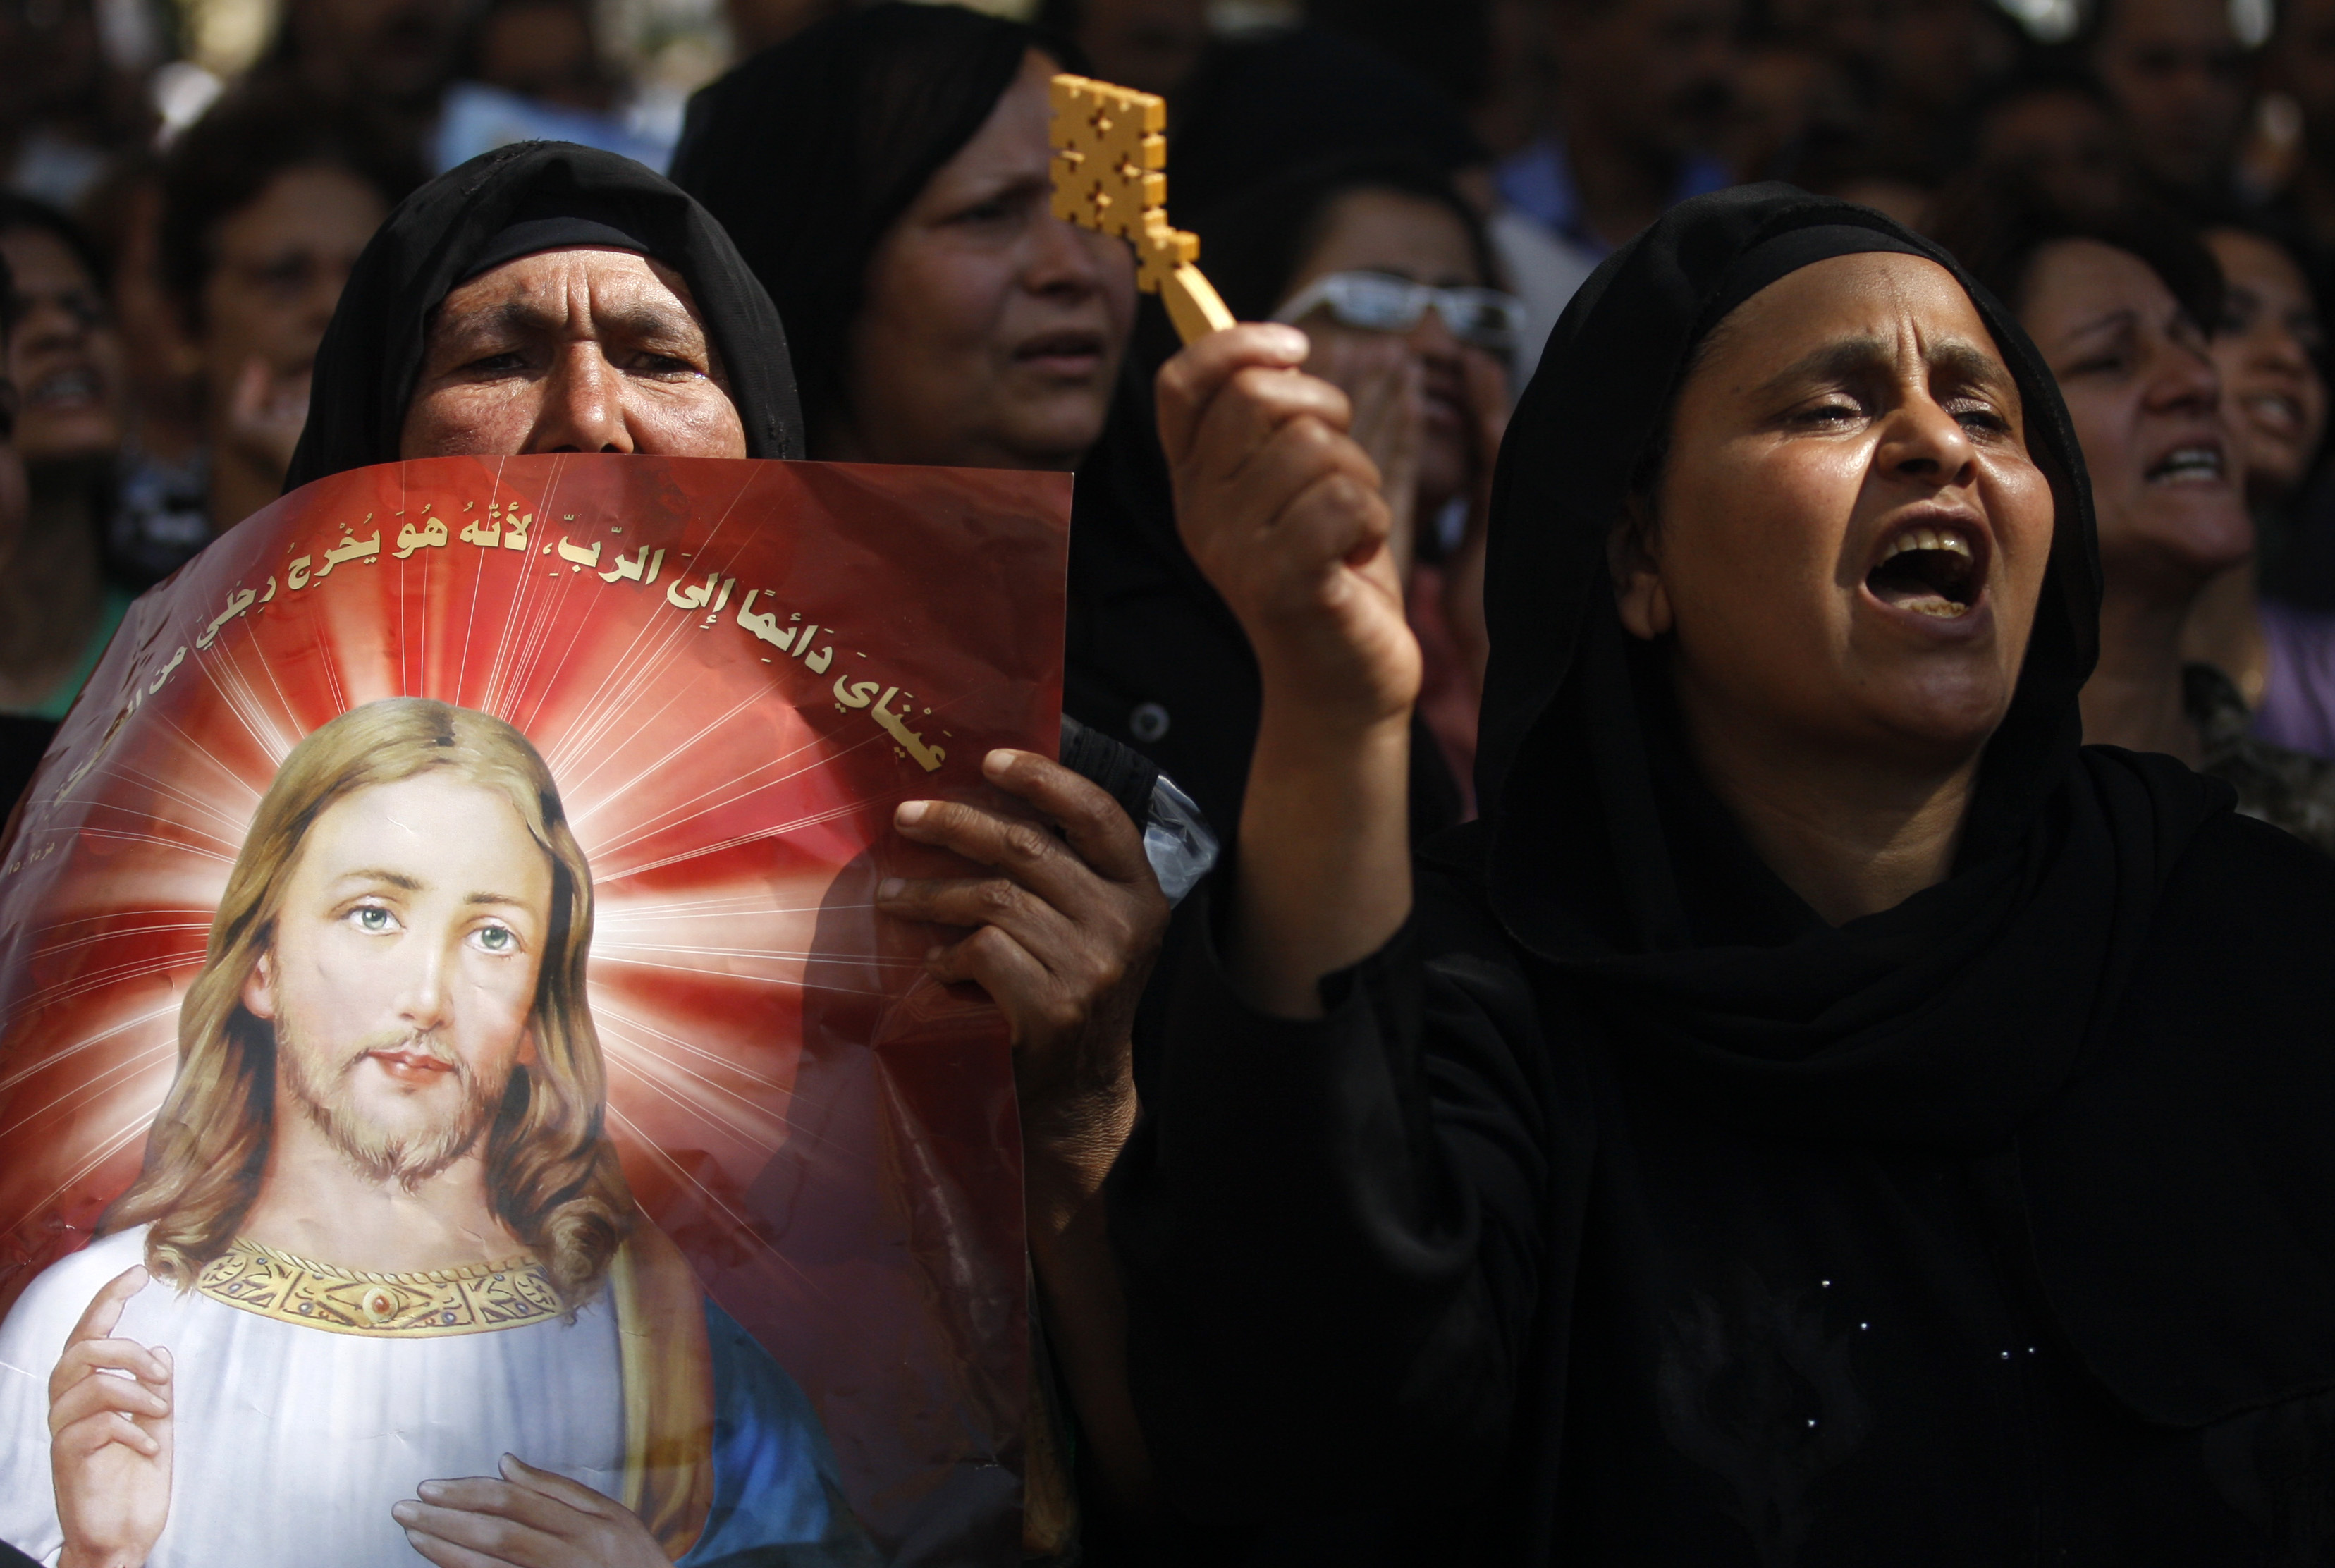 Foto del lunes 9 de mayo de 2011, en la que cristianos coptos egipcios entonan consignas airadas mientras protestan por los recientes ataques a cristianos e iglesias, frente al edificio de la televisión estatal en El Cairo, Egipto. (Foto AP/Khalil Hamra, archivo)